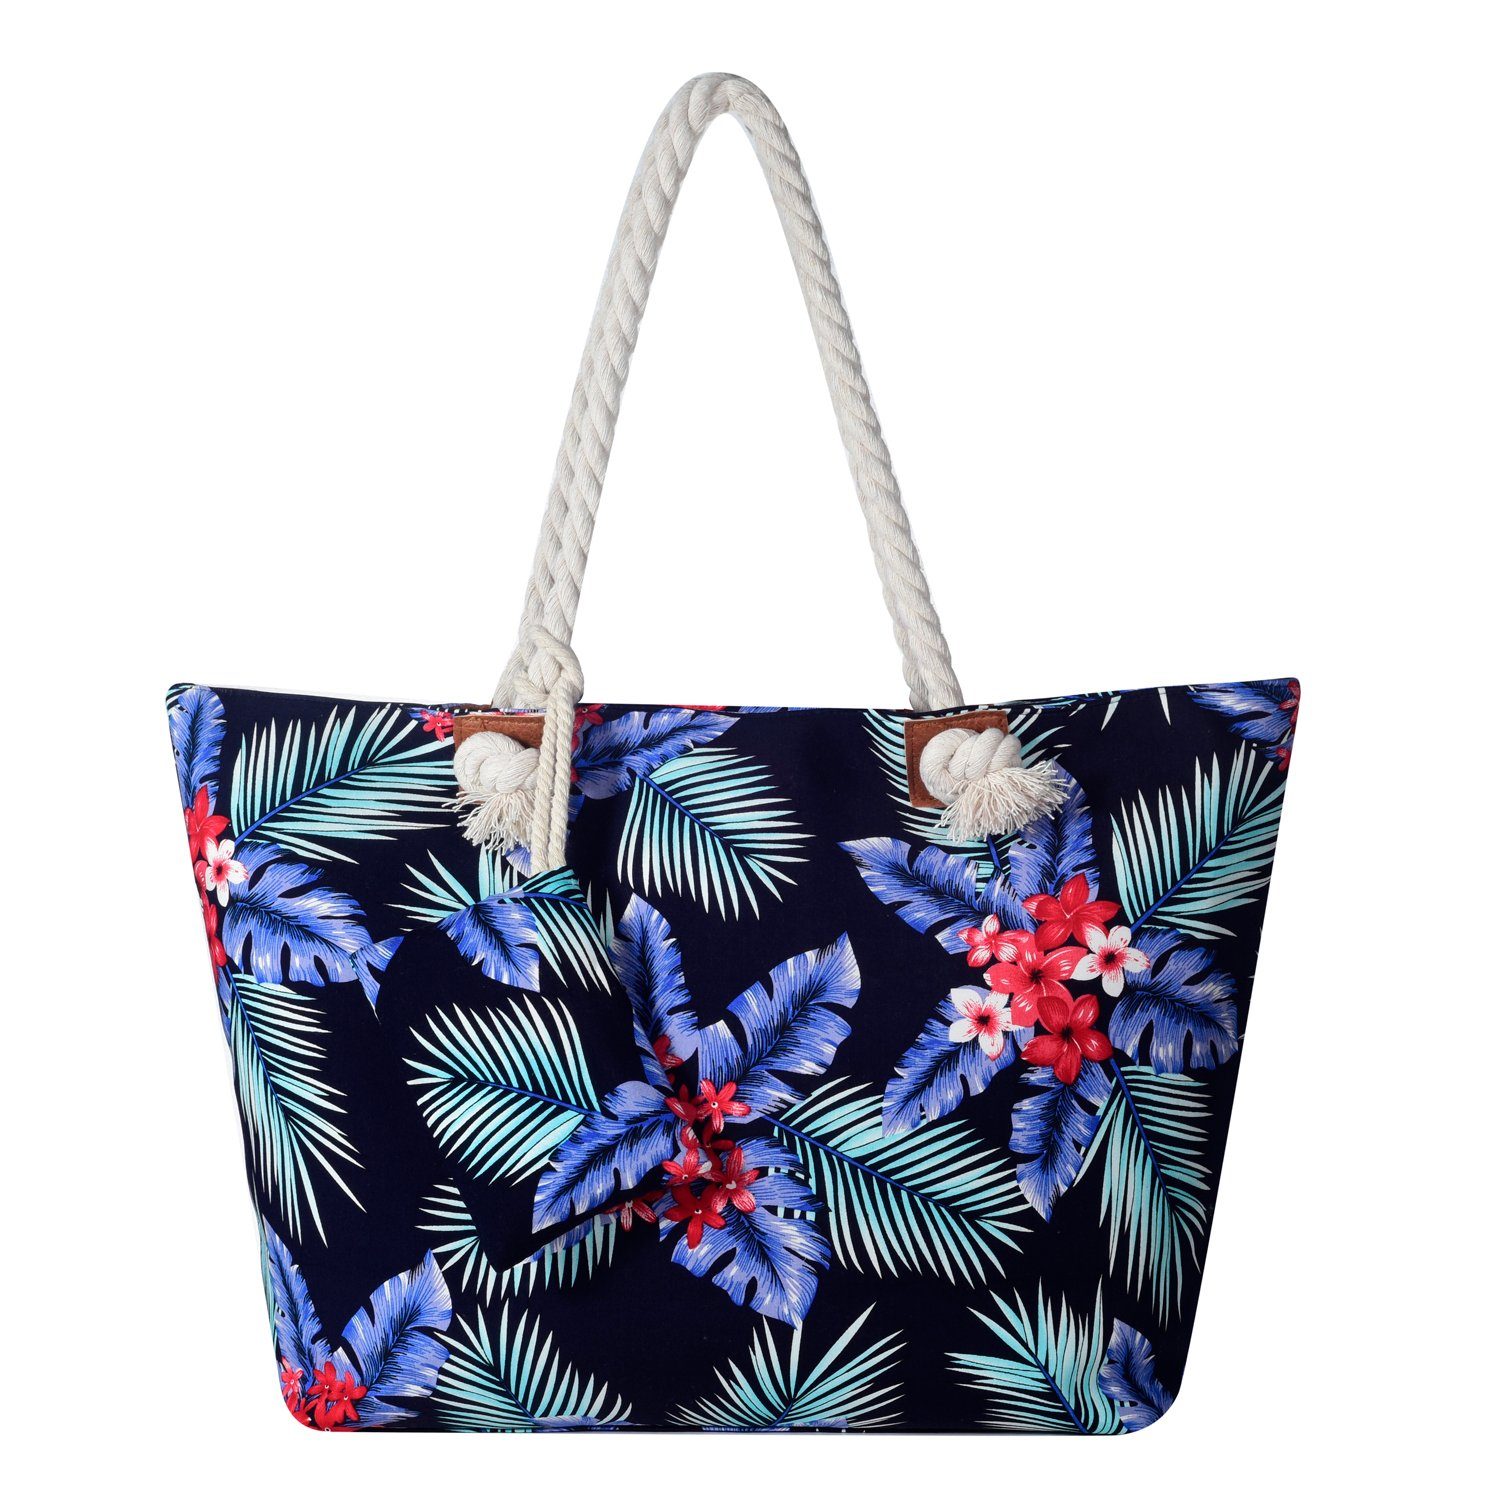 DonDon Strandtasche Shopper Schultertasche Beach Style (2-tlg), Große Strandtasche, mit Reißverschluss, tolle Motive hawaii Flower